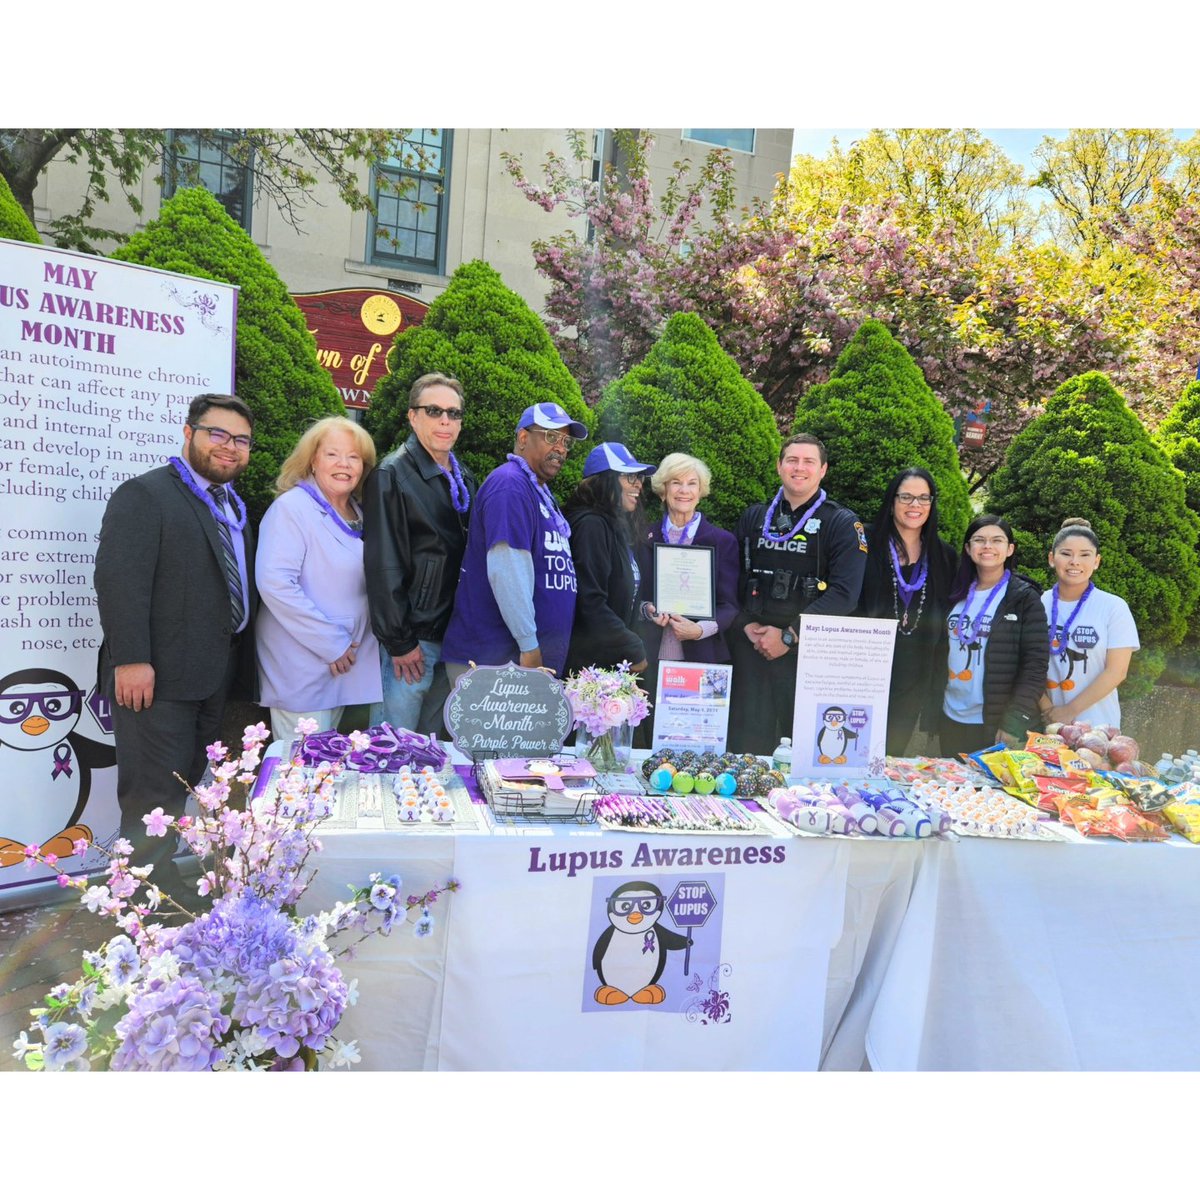 Kearny has declared May as #LupusAwareness Month! 💜🦋 Alcalde Carol Jean Gaunt Doyle y concejales oficialmente declararon Mayo cómo el Mes de #Lupus en la Ciudad de Kearny Thank you to everyone who came out to spread awareness, show support & turn Kearny purple!! #Lupuschat